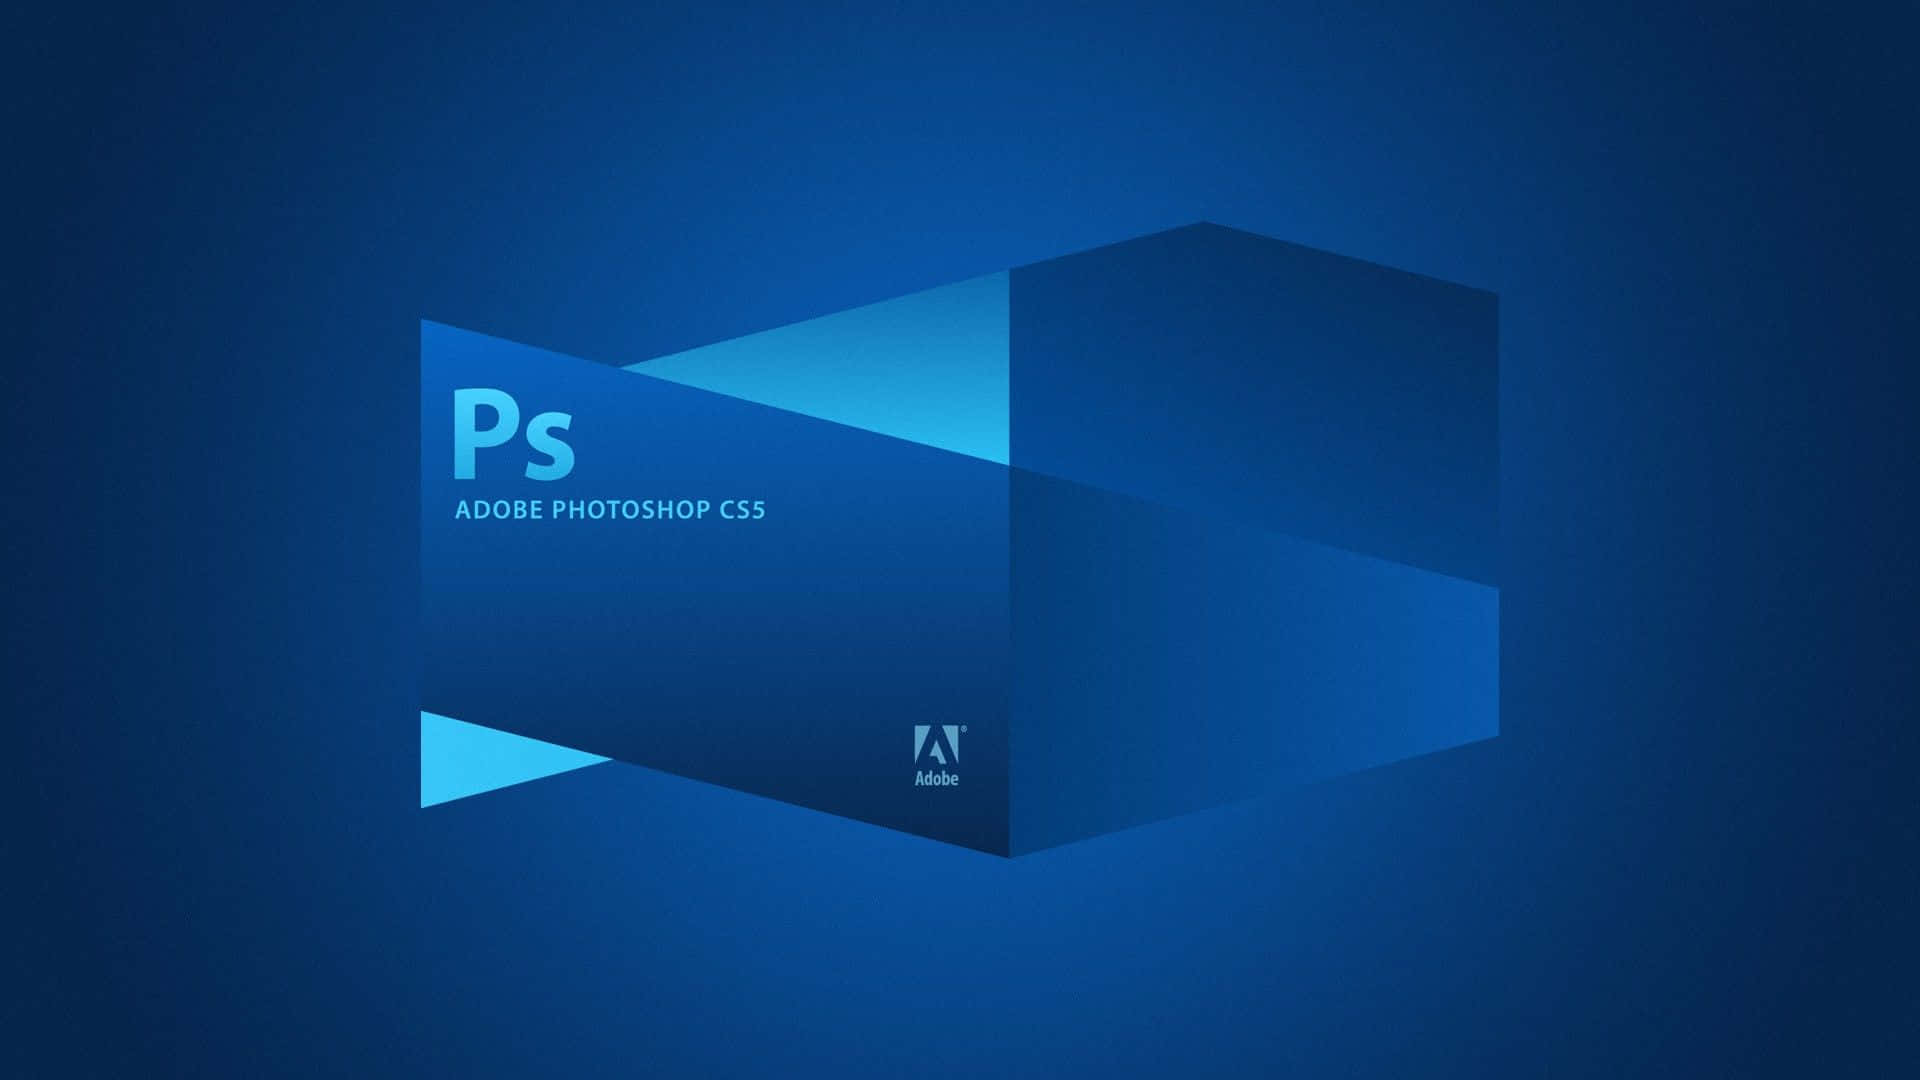 Blåbakgrund För Adobe Photoshop Cs5.